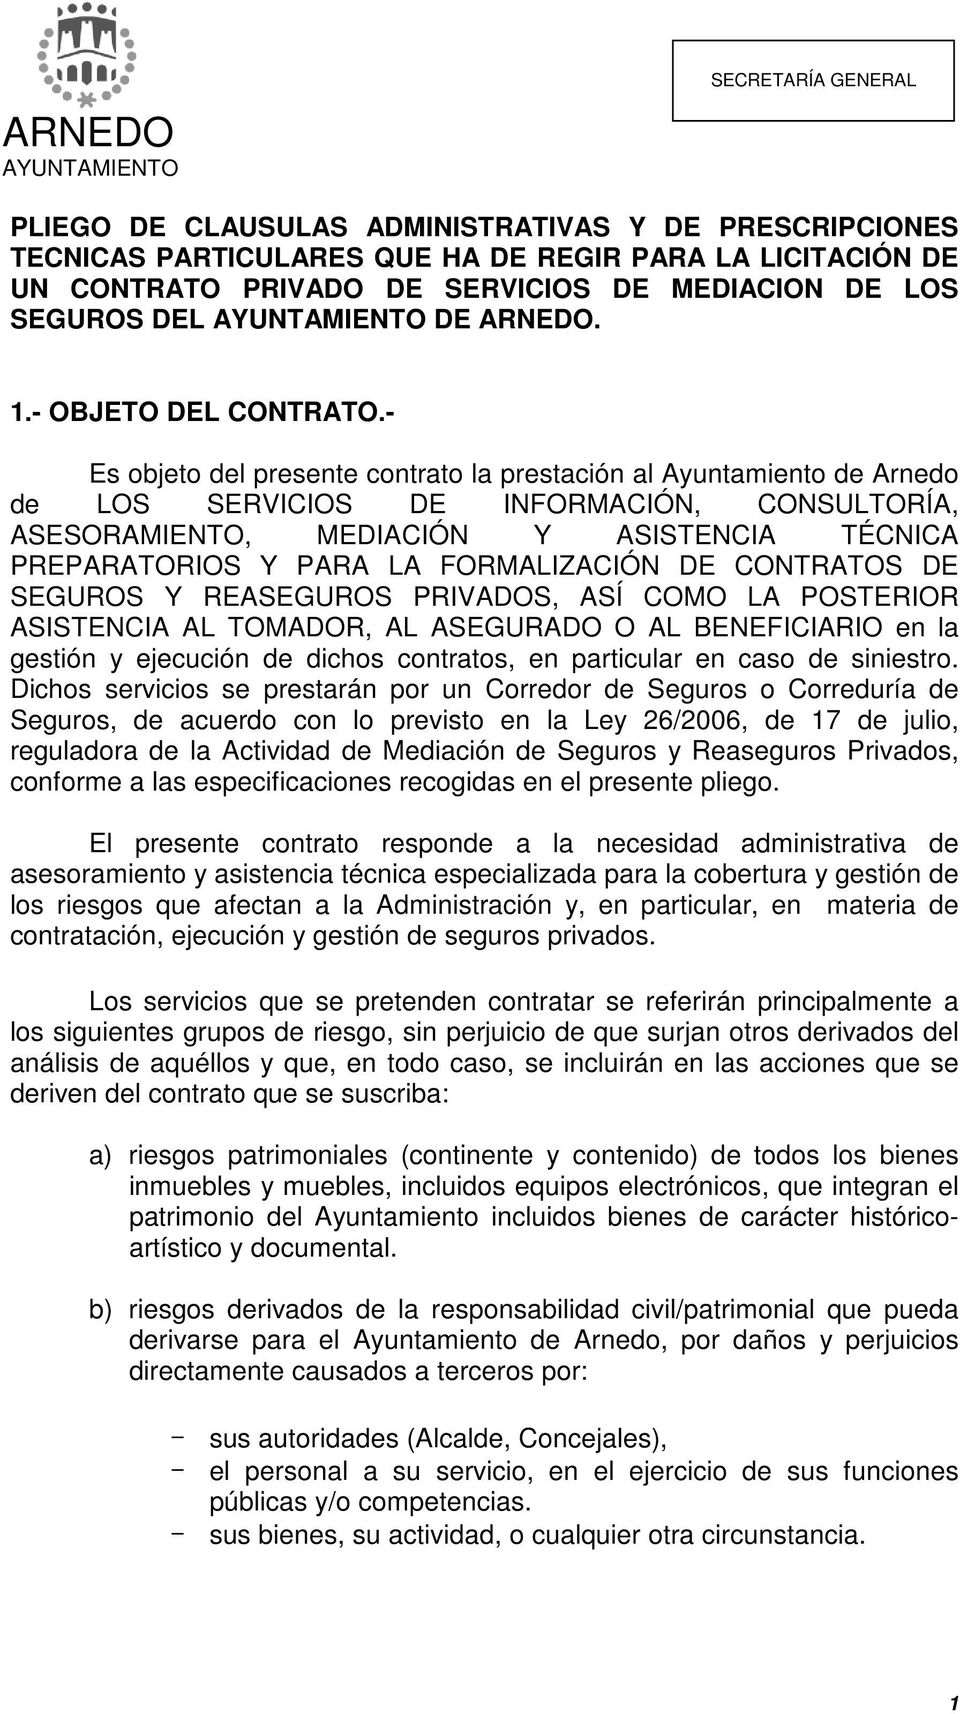 - Es objeto del presente contrato la prestación al Ayuntamiento de Arnedo de LOS SERVICIOS DE INFORMACIÓN, CONSULTORÍA, ASESORAMIENTO, MEDIACIÓN Y ASISTENCIA TÉCNICA PREPARATORIOS Y PARA LA